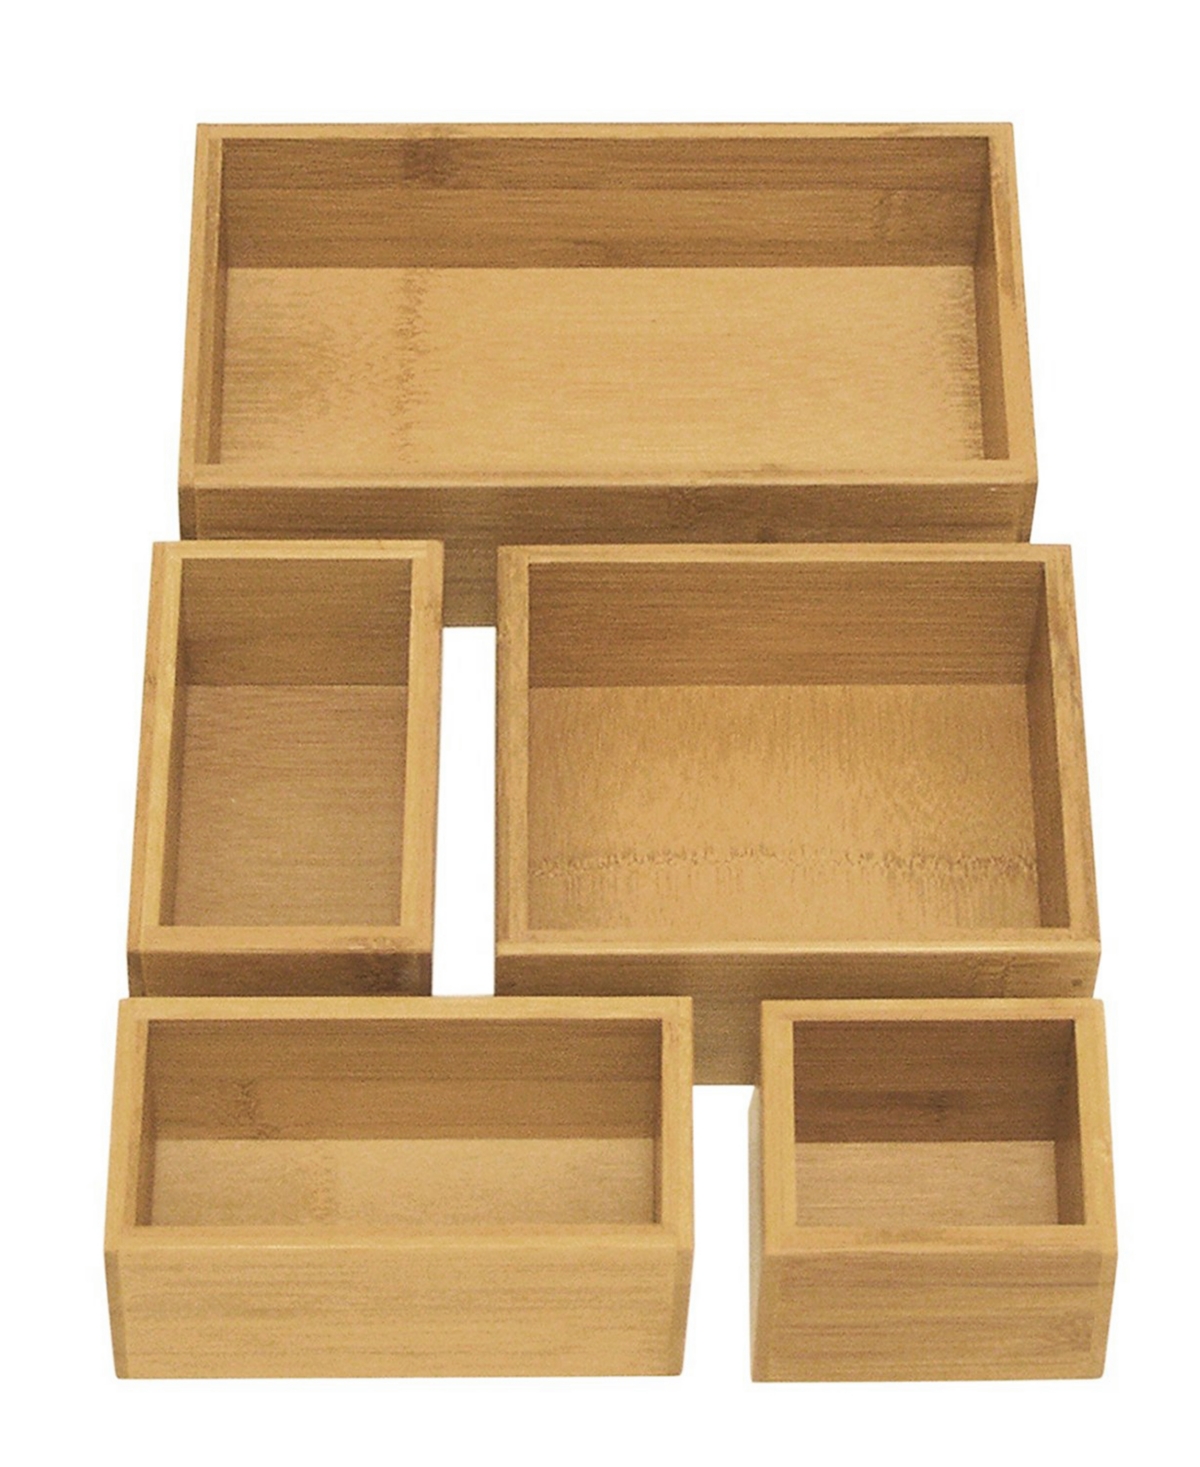 Bamboo Storage Box Drawer Organizer 5 Piece Set - Natural